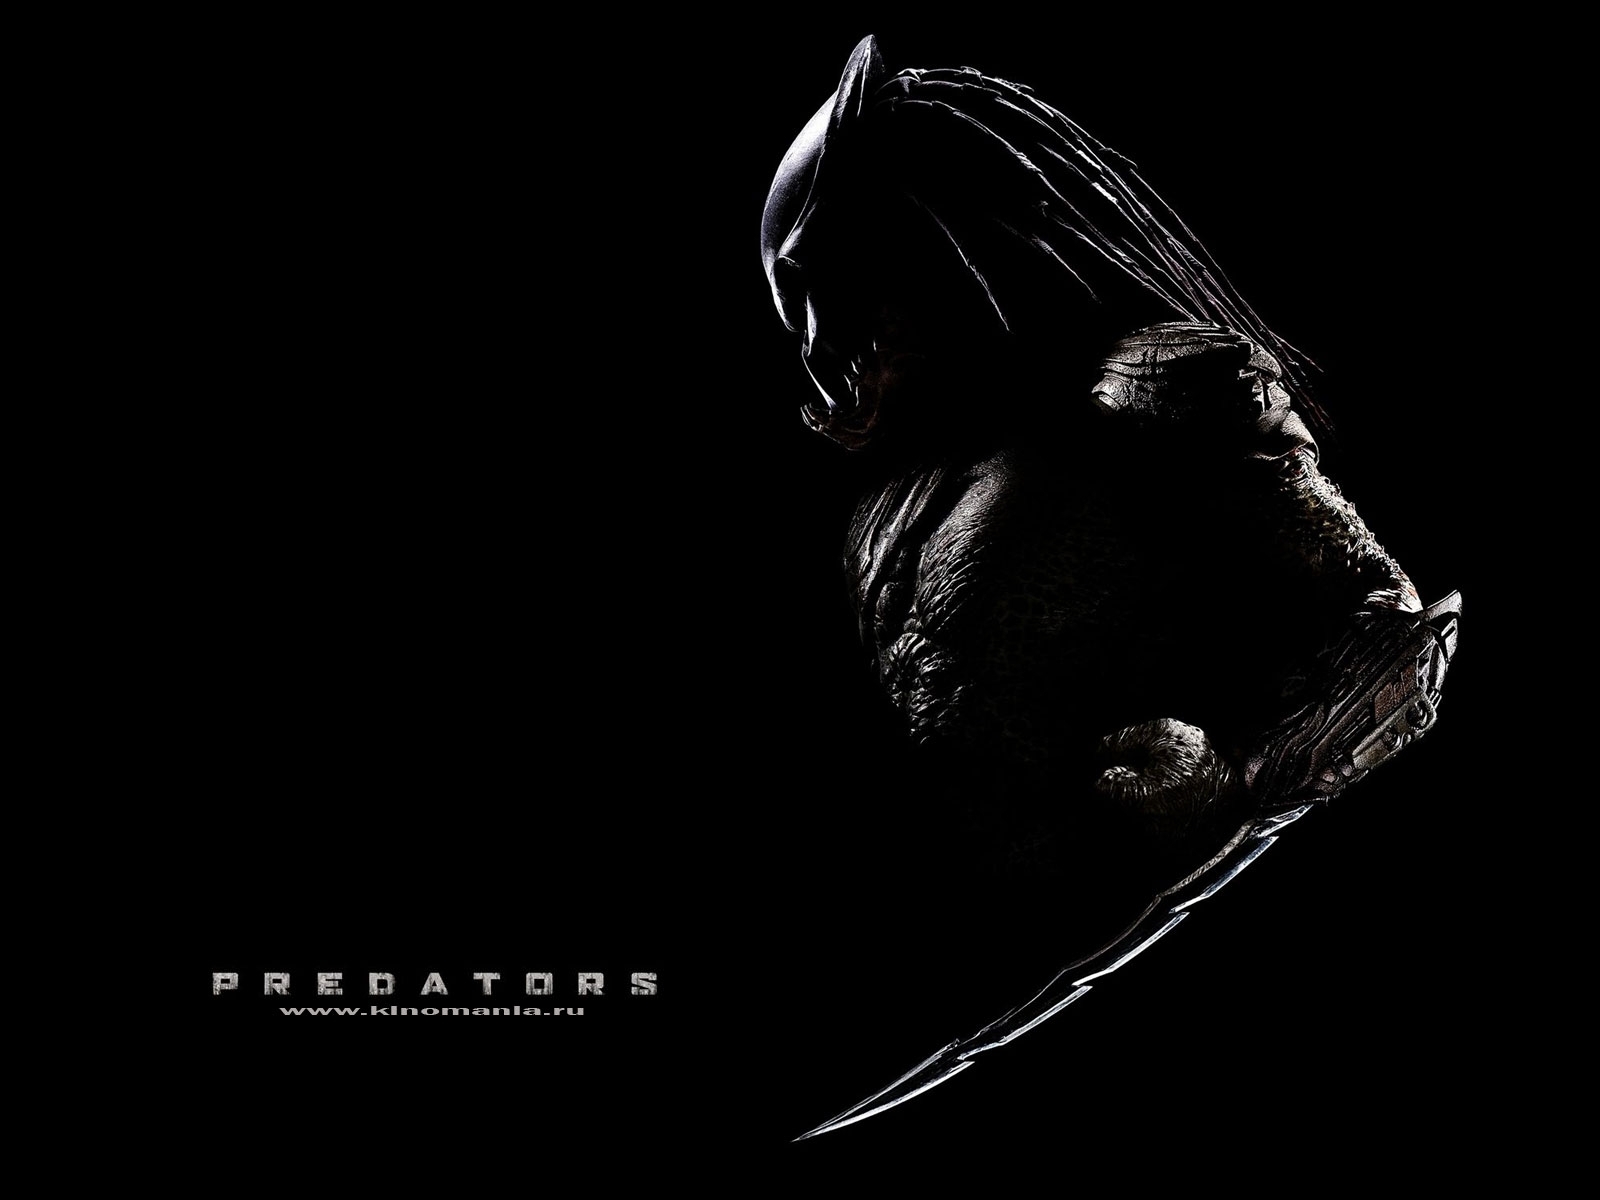 Mobile wallpaper: Predators, Cinema, 8840 download the picture for free.